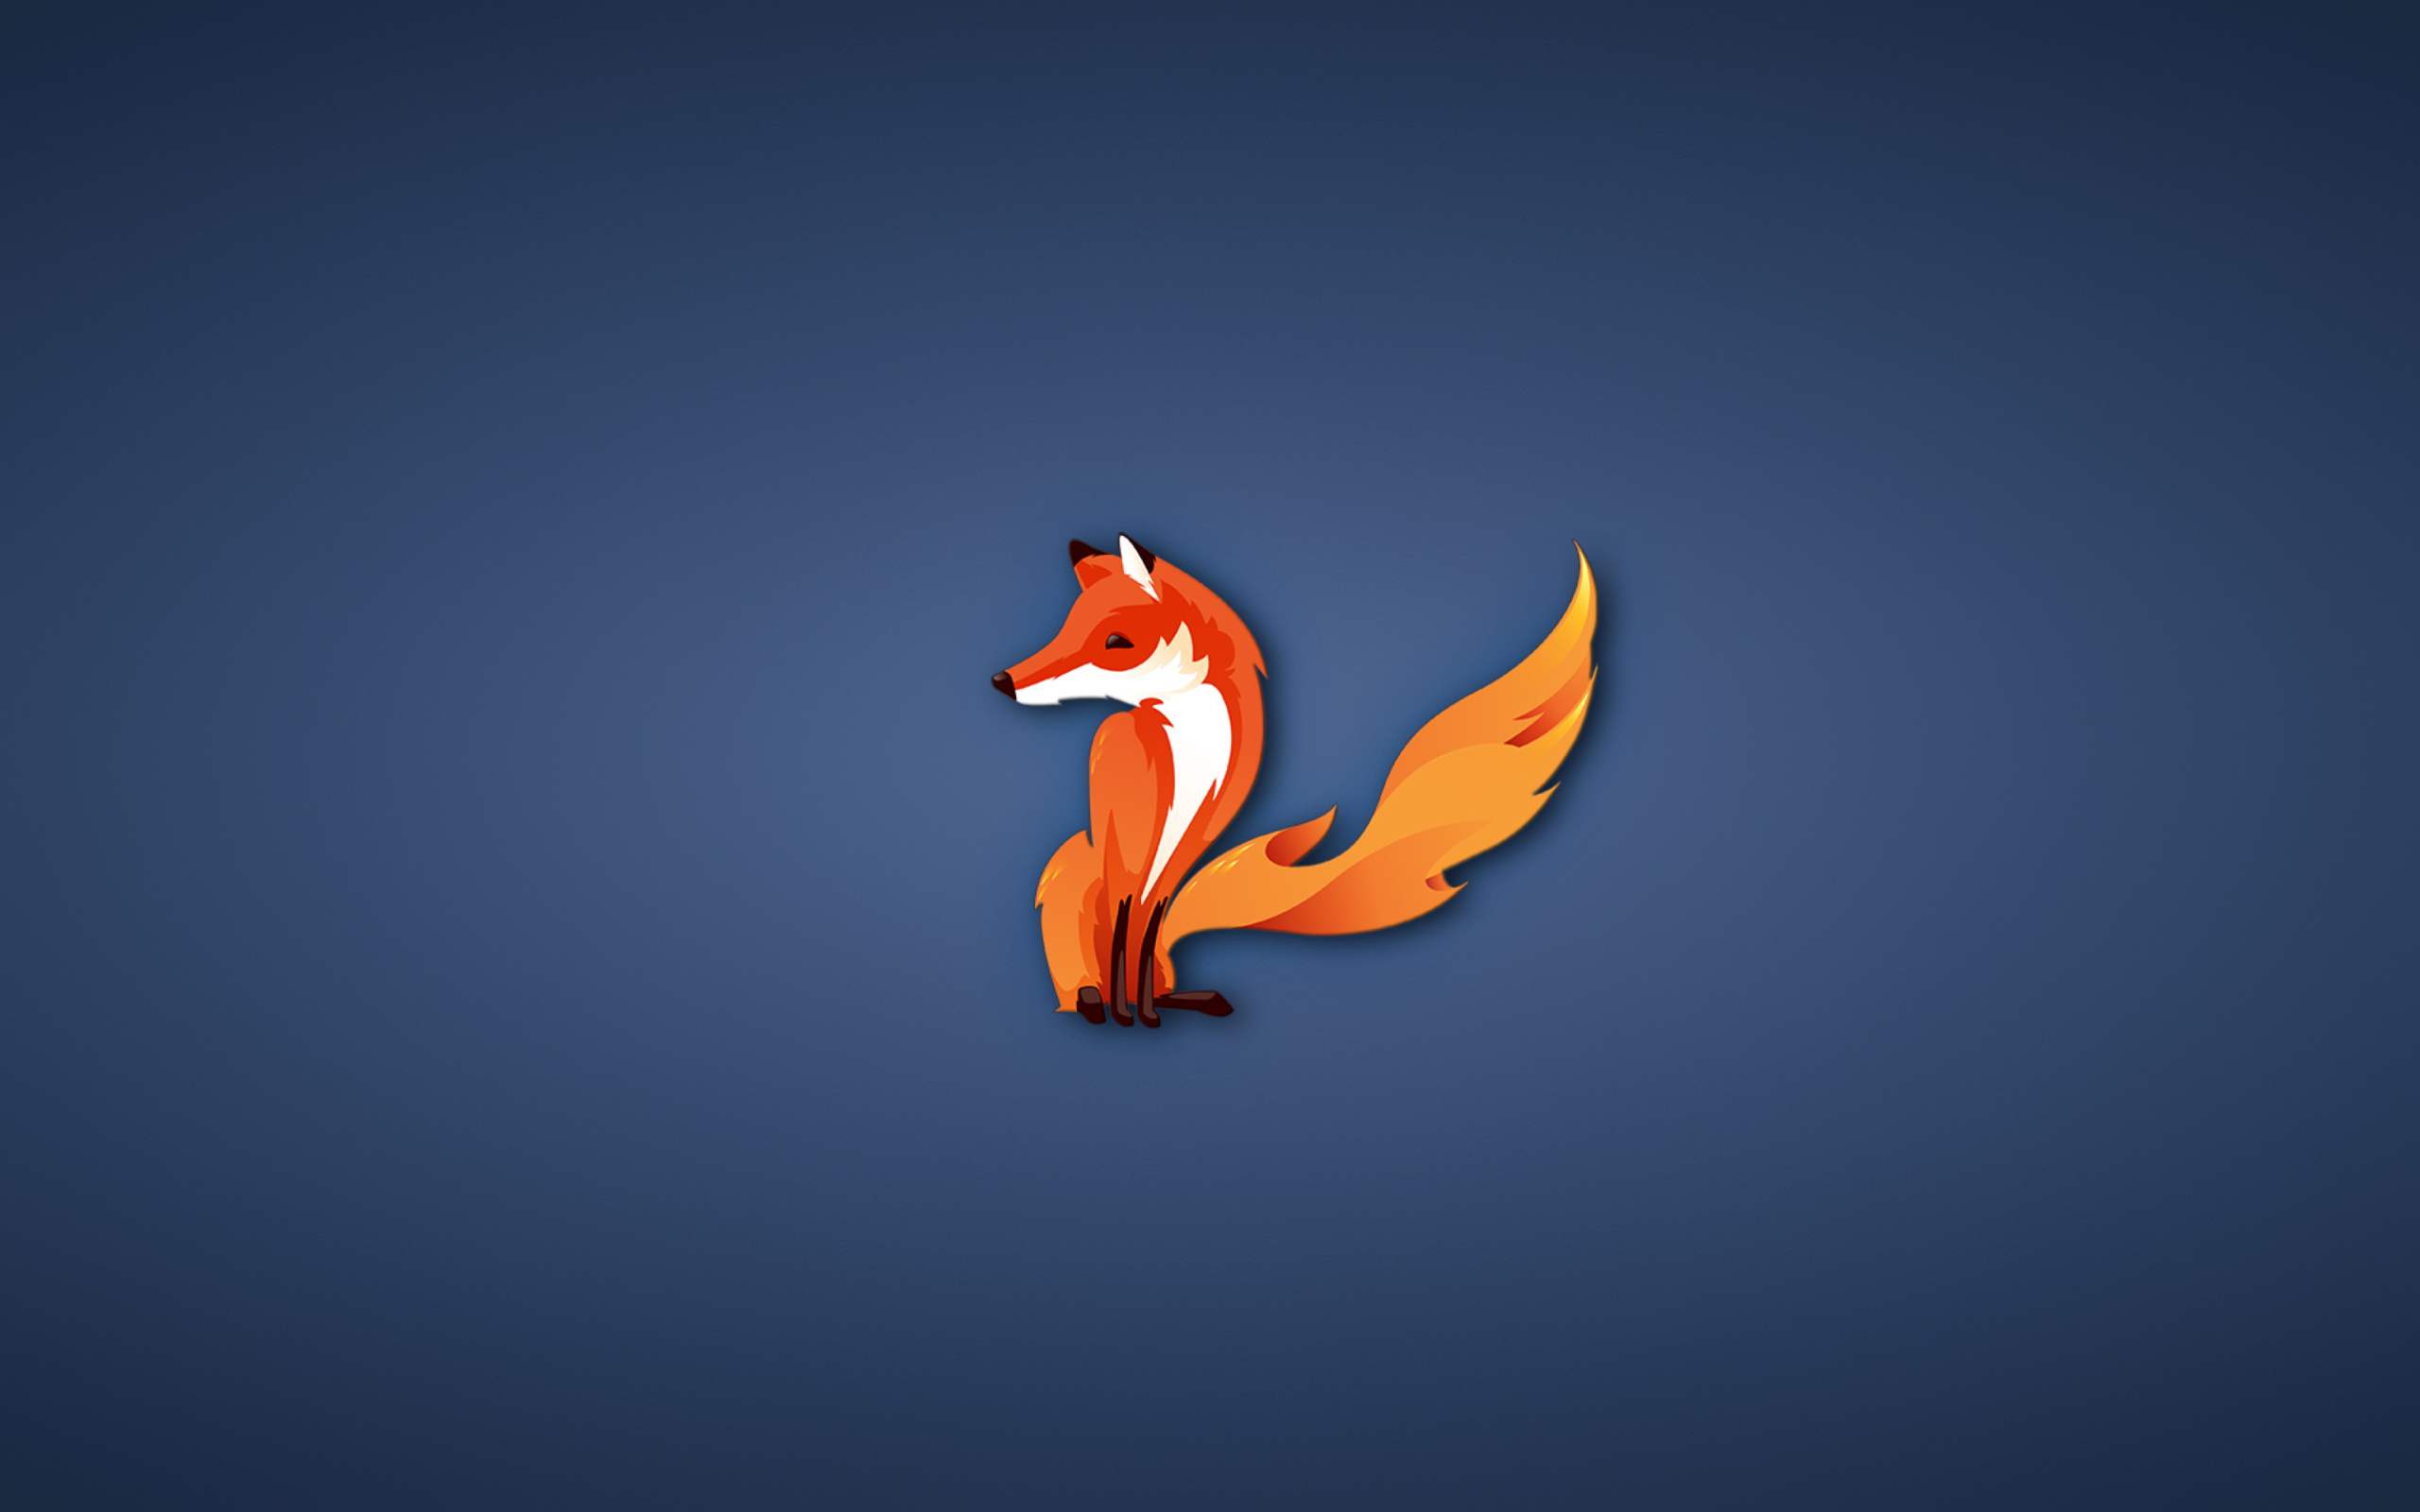 Das Firefox Wallpaper 2560x1600